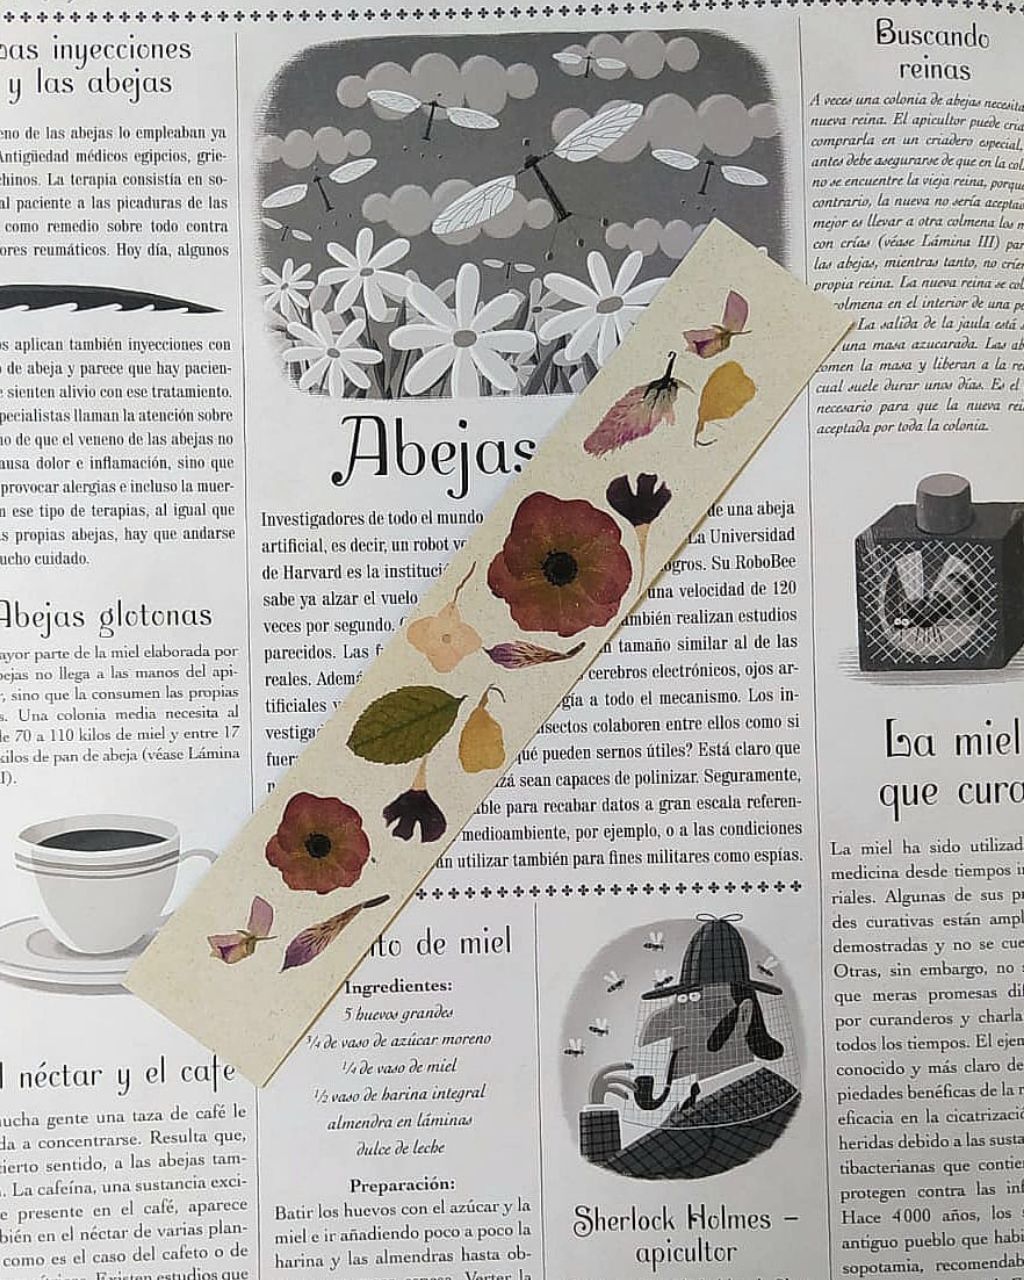 Bookmark con print de flores colombianas en tonos crudos sobre papel color crudo.